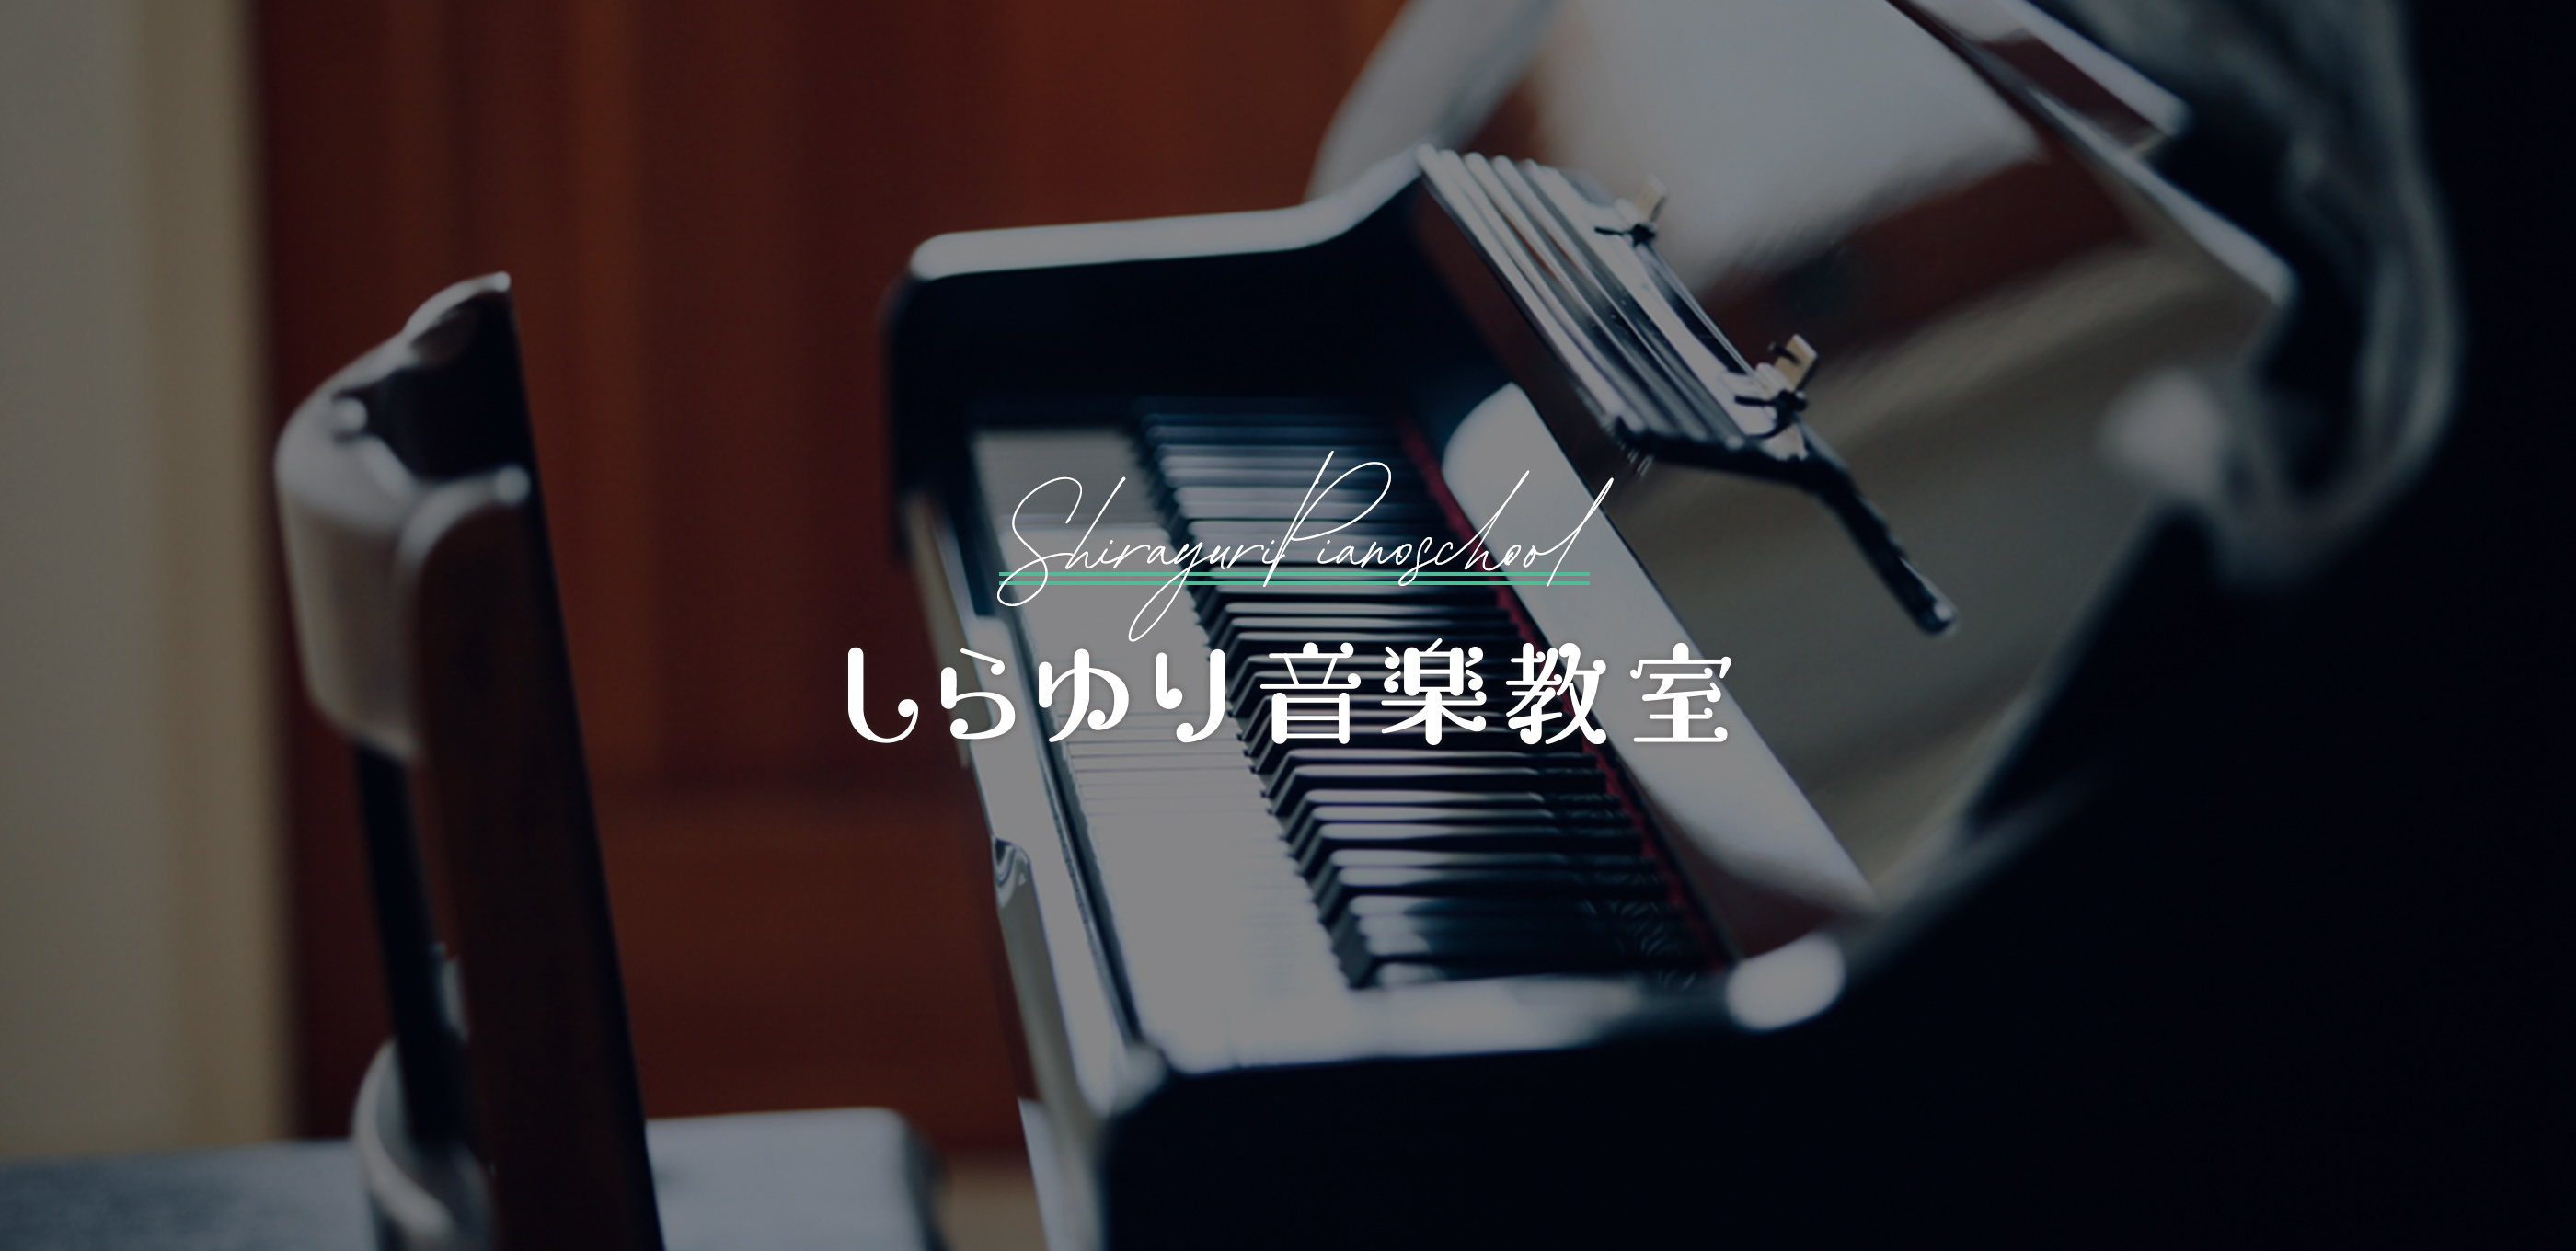 墨田区錦糸町駅から徒歩5分の【ピアノ教室】しらゆり音楽教室